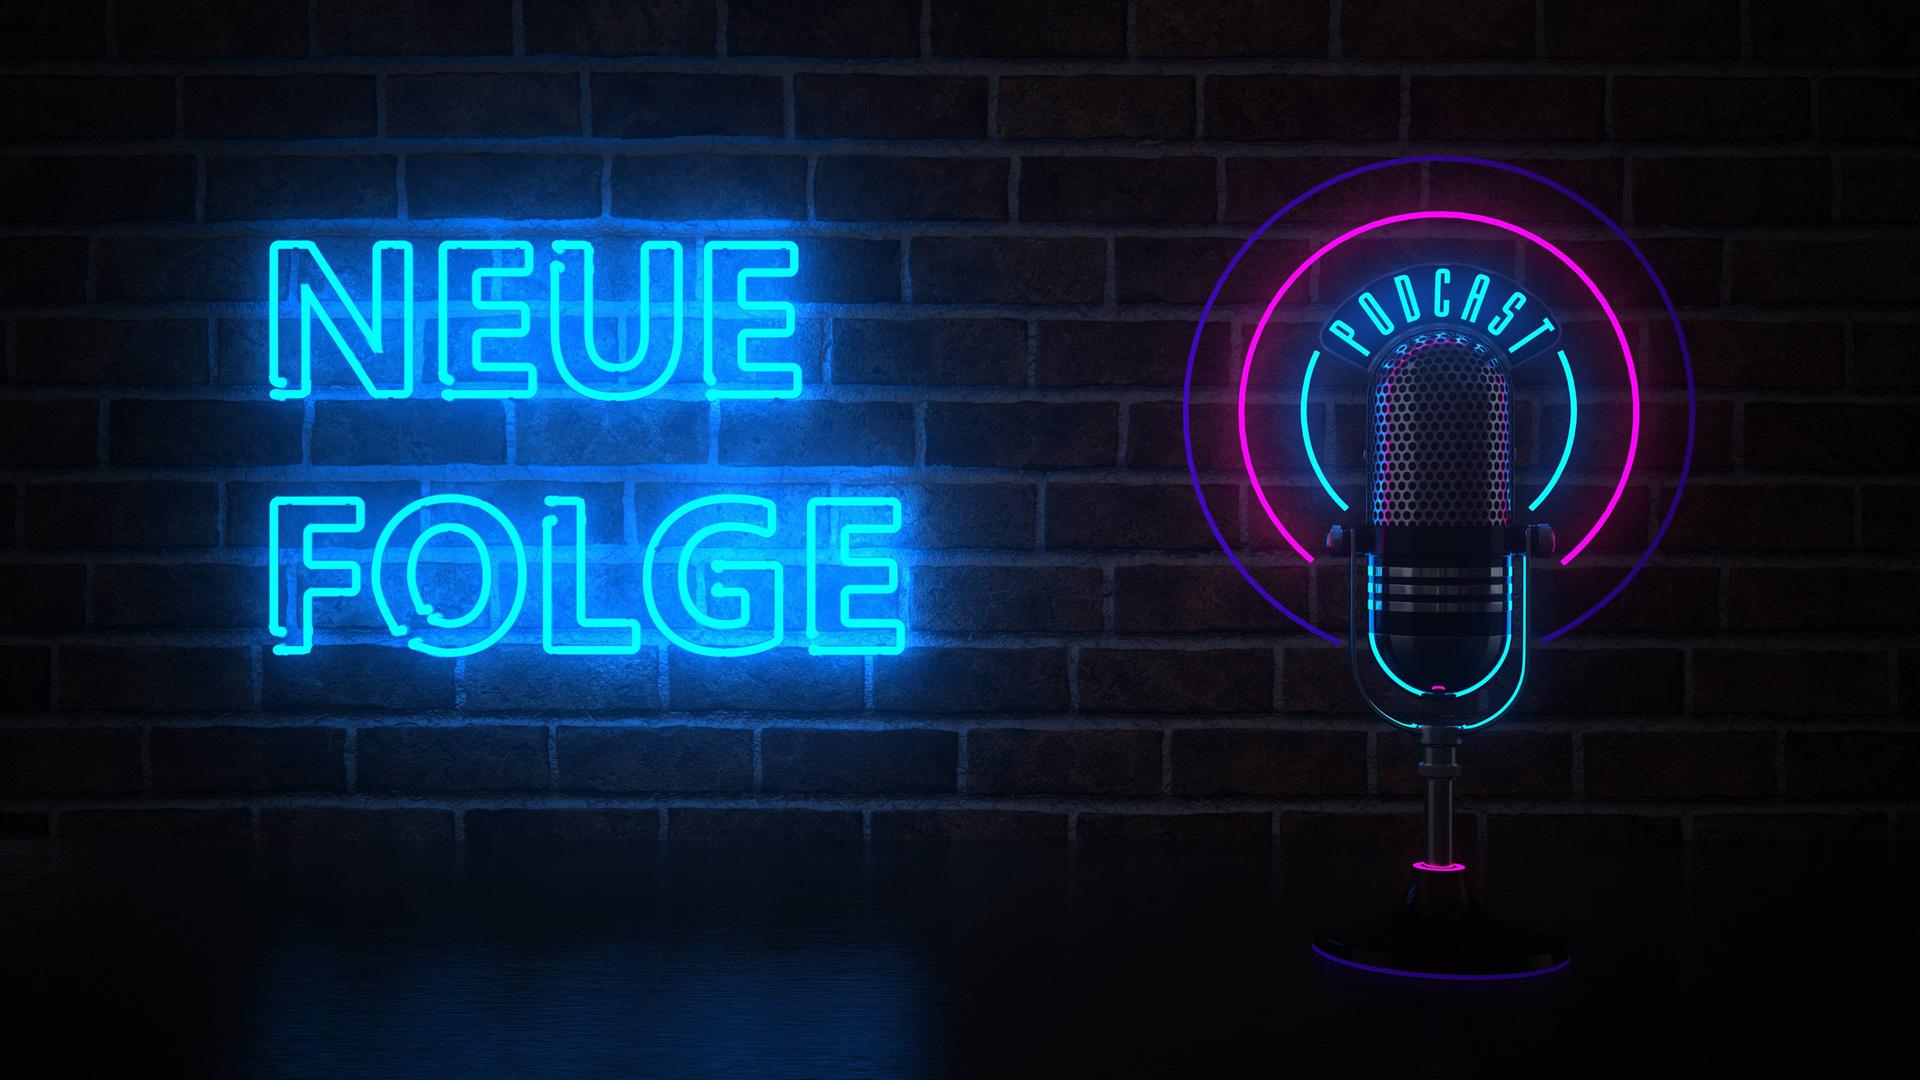 Blaue Neonschrift "Neue Folge" vor einer Ziegelwand, daneben ein Mikrofon mit türkisfarbener Neonschrift "Podcast", umgeben von zwei Kreisen in rosa und lila.